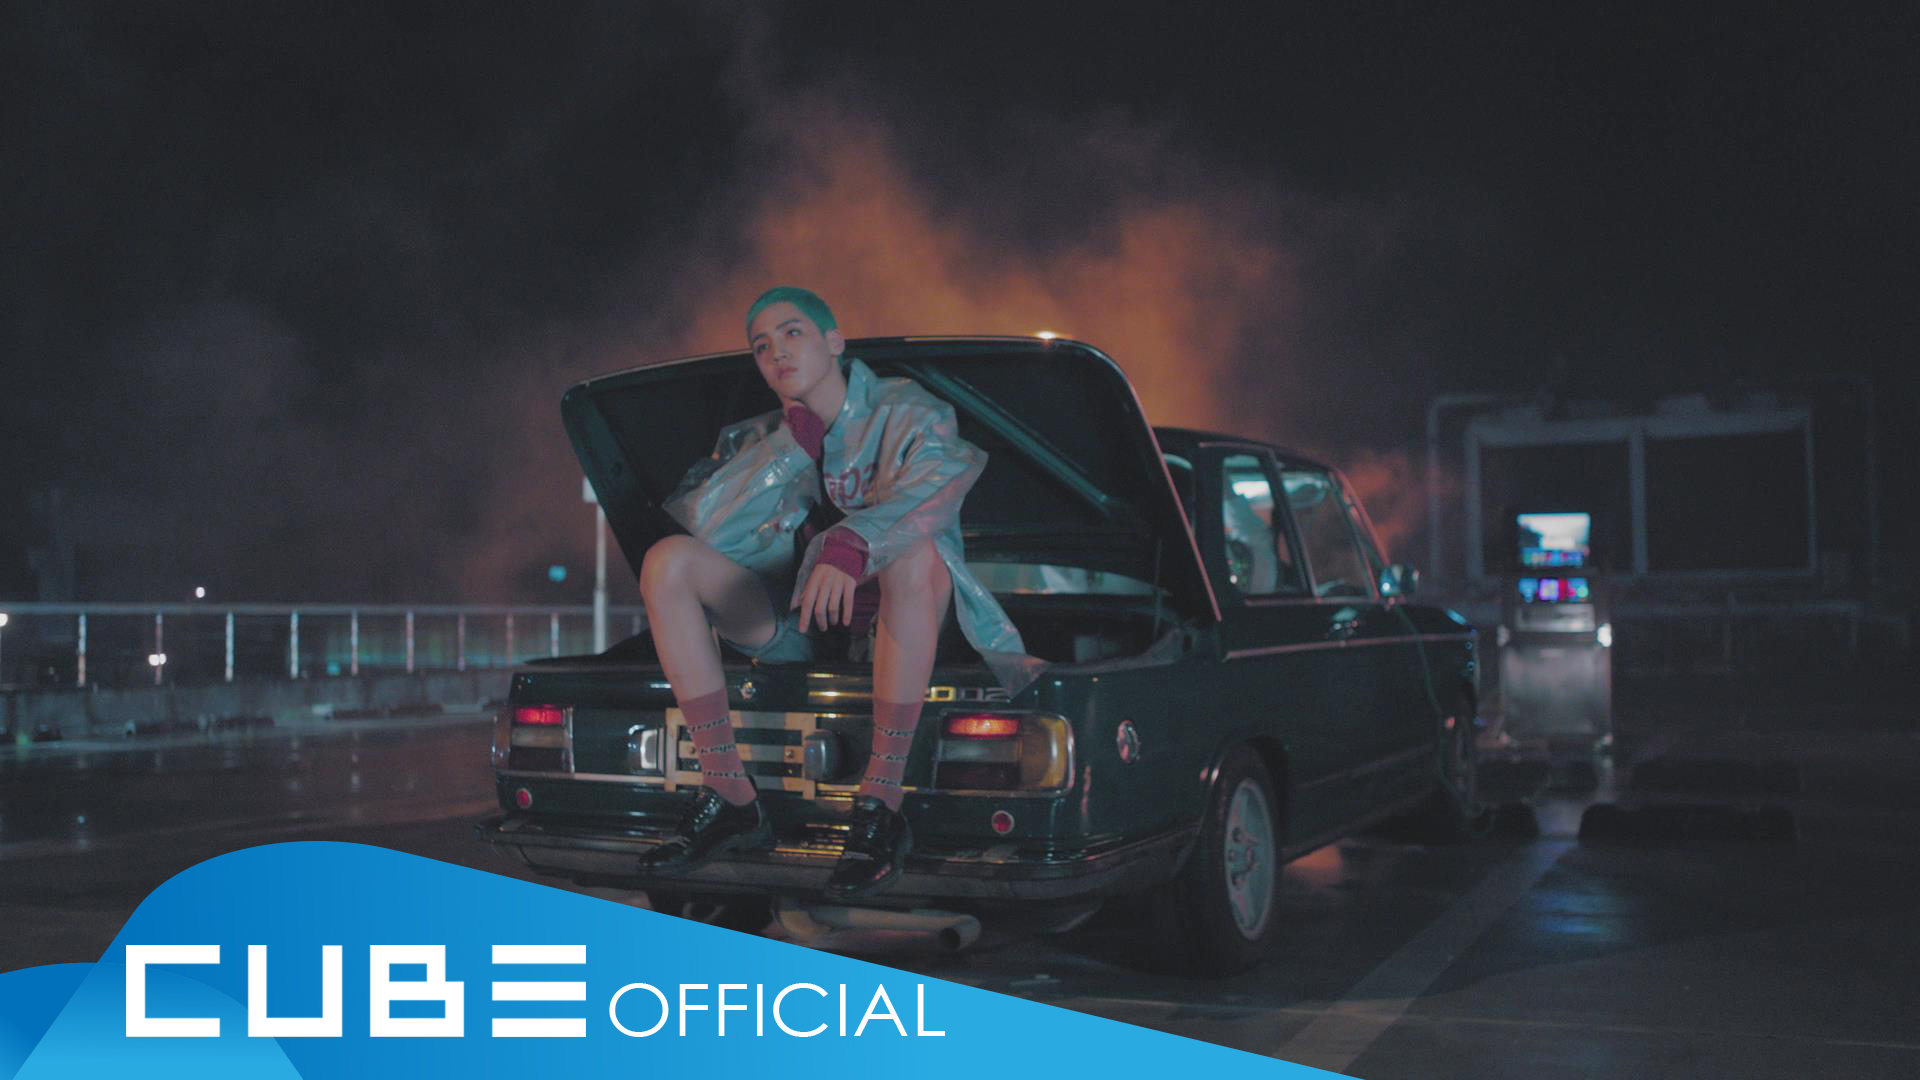 펜타곤 - '청개구리(Naughty boy)' Official Music Video